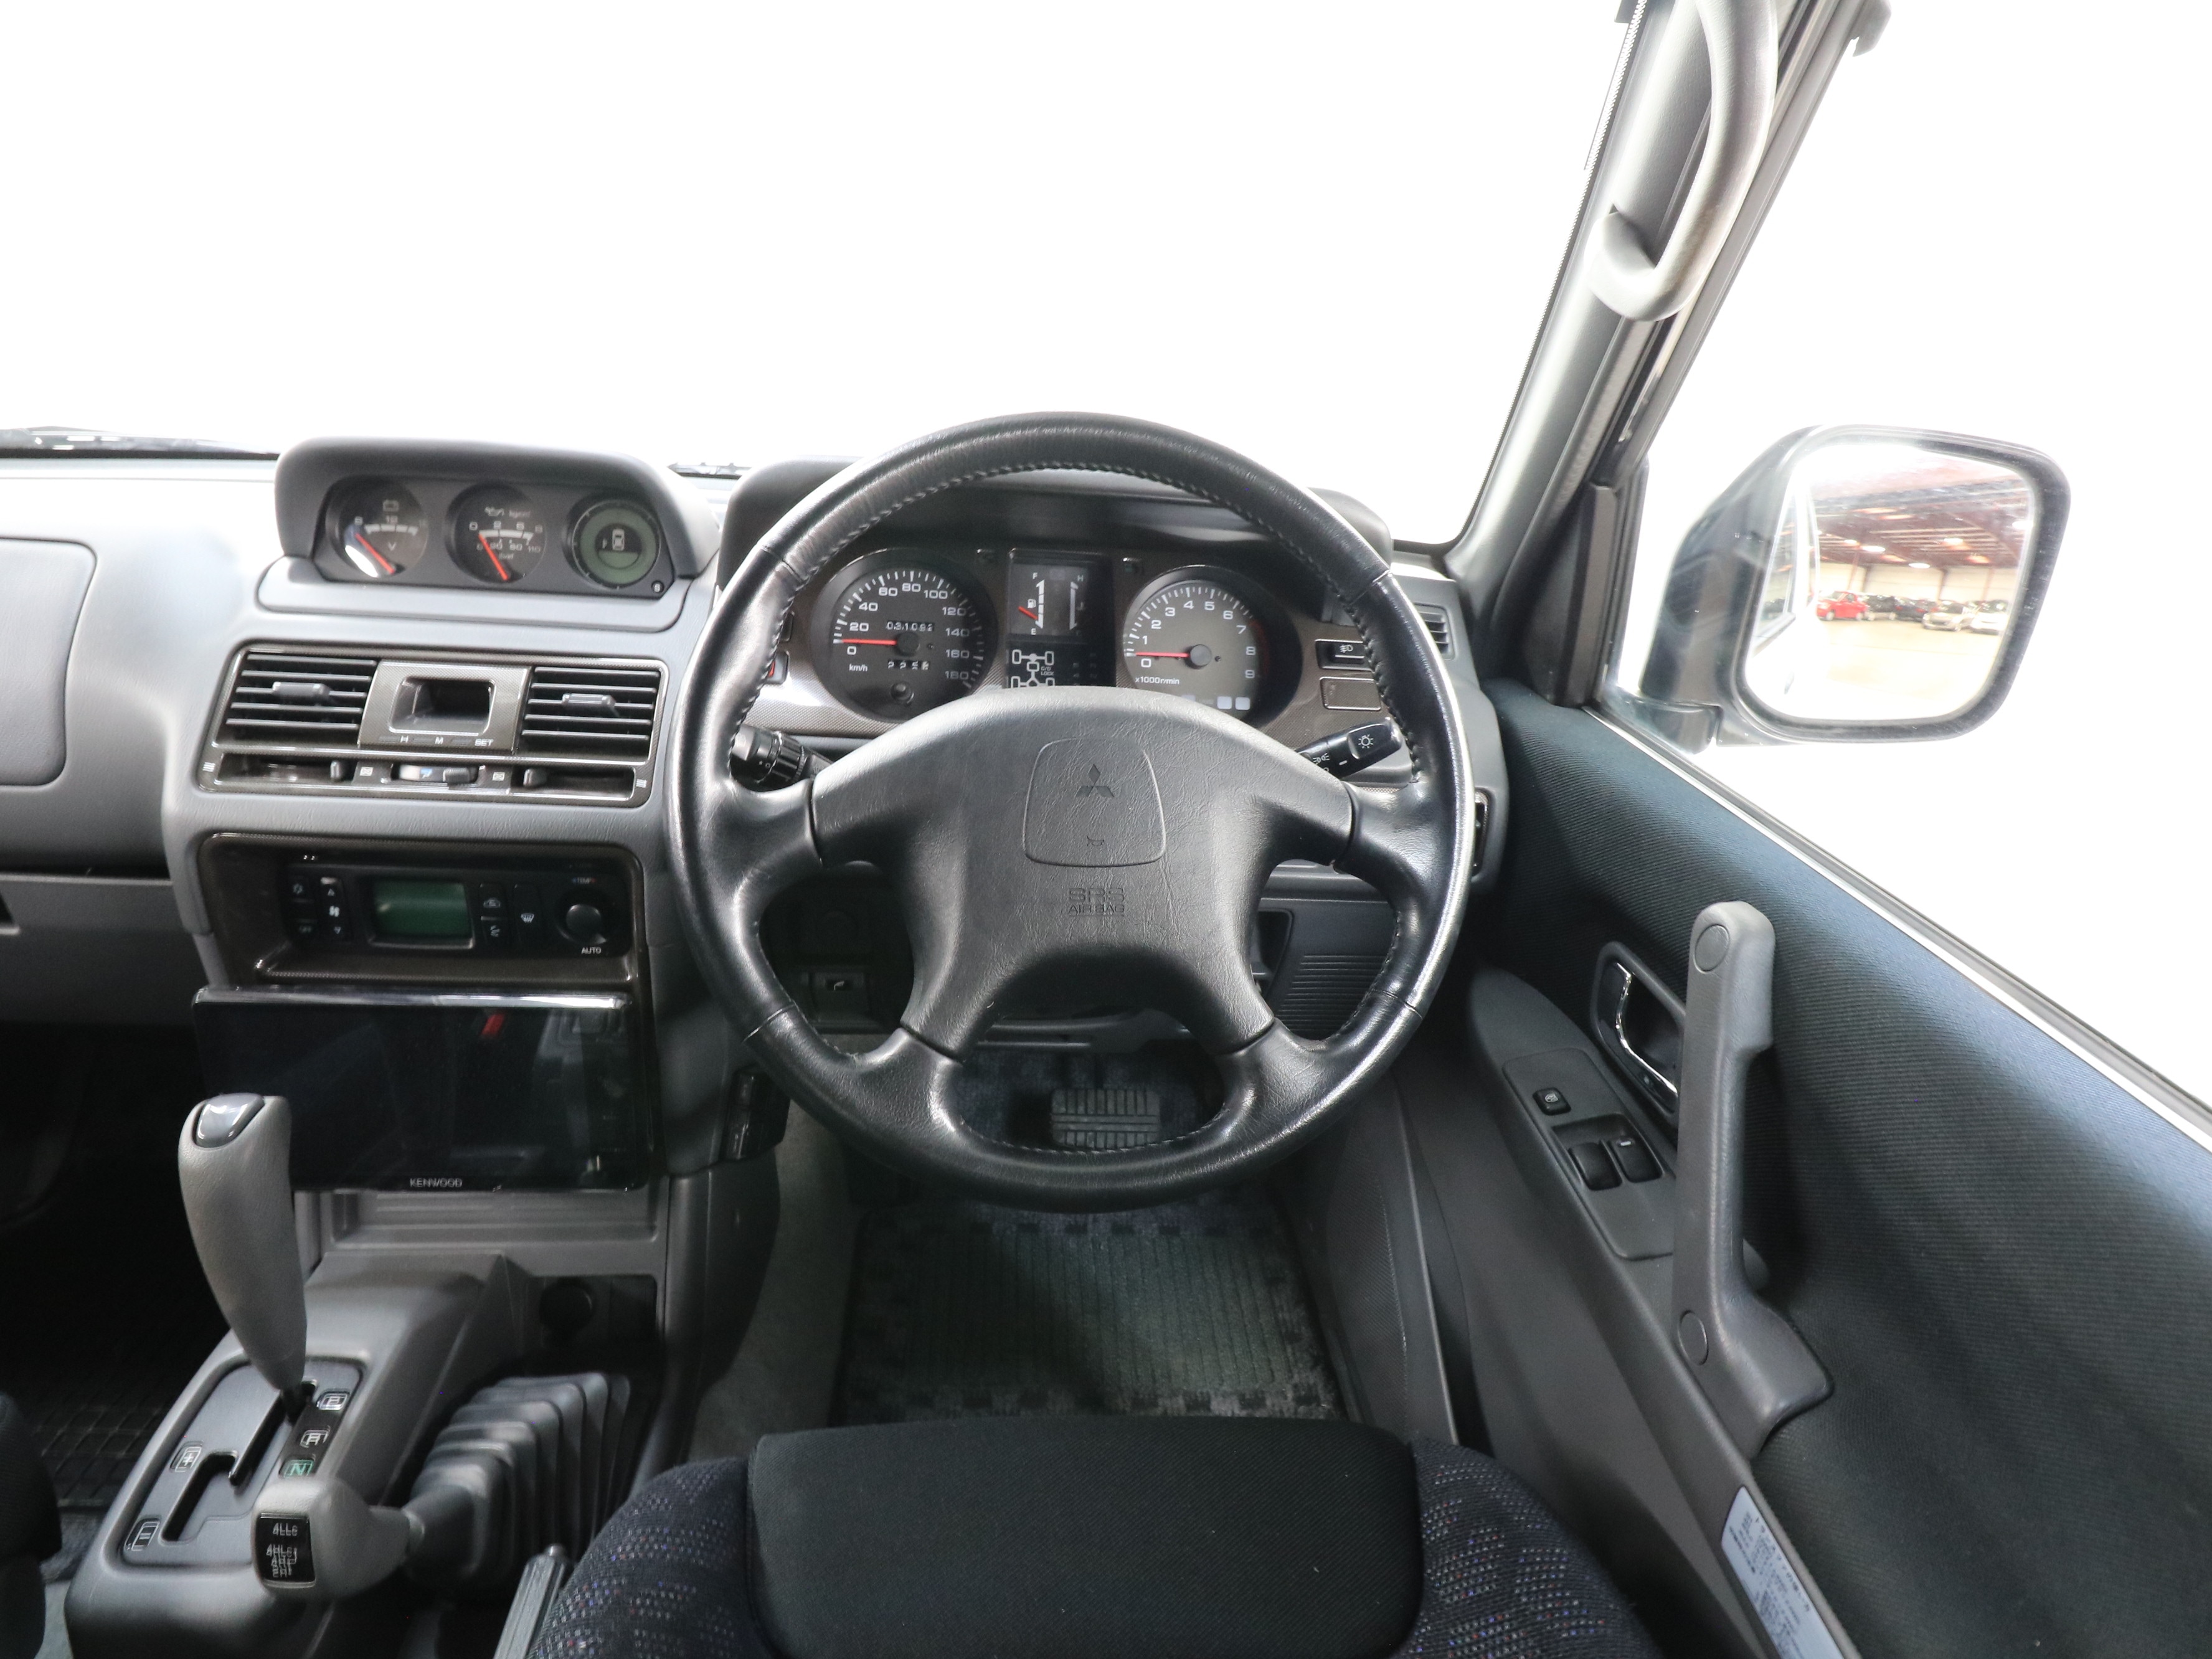 1997 Mitsubishi Pajero 10